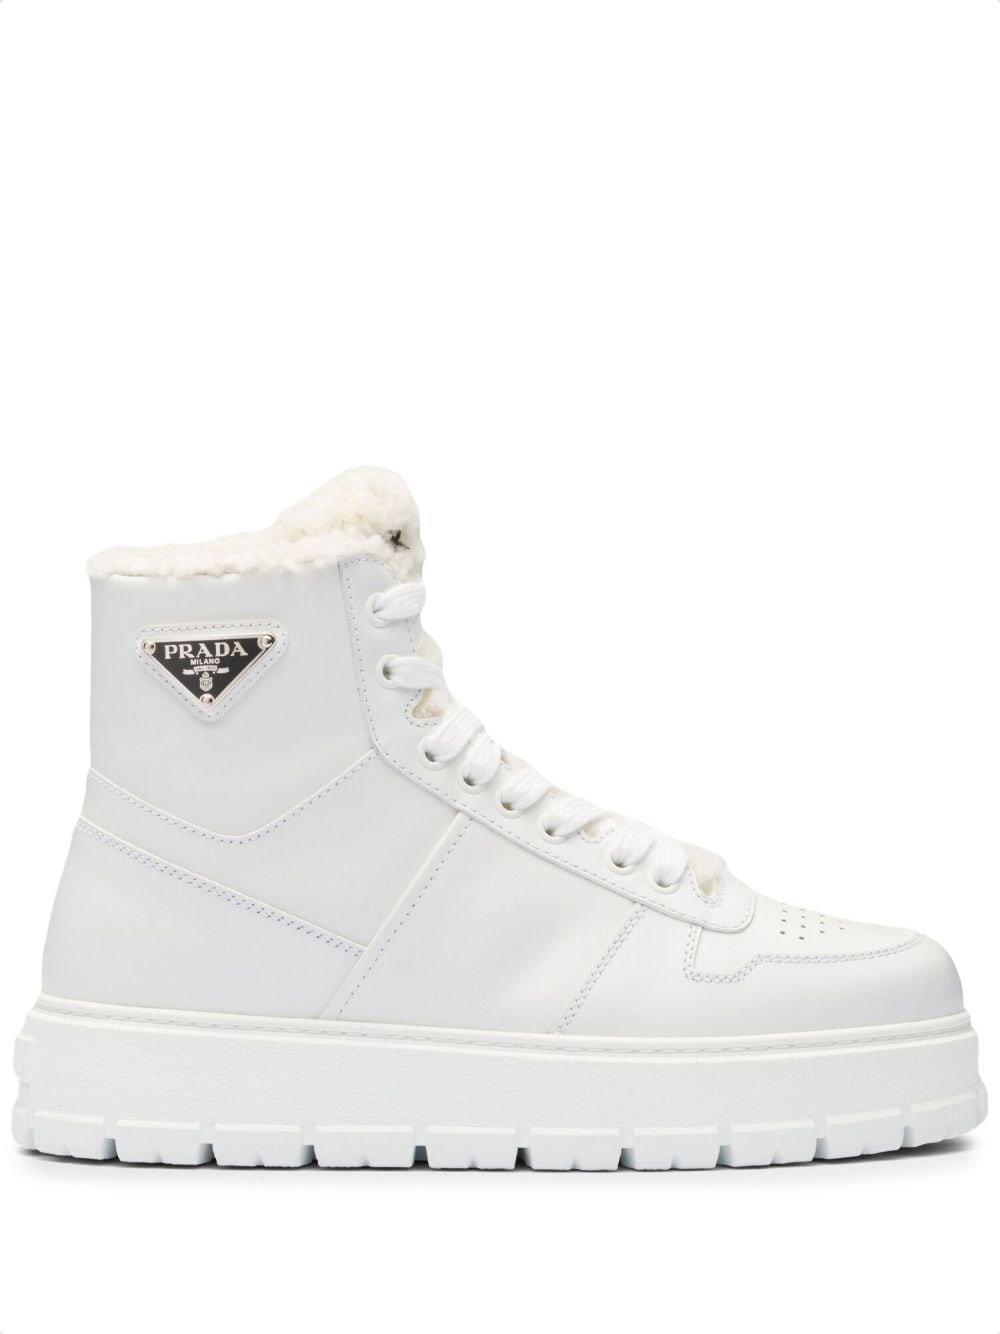 Prada triangle-logo high-top leather sneakers - White von Prada